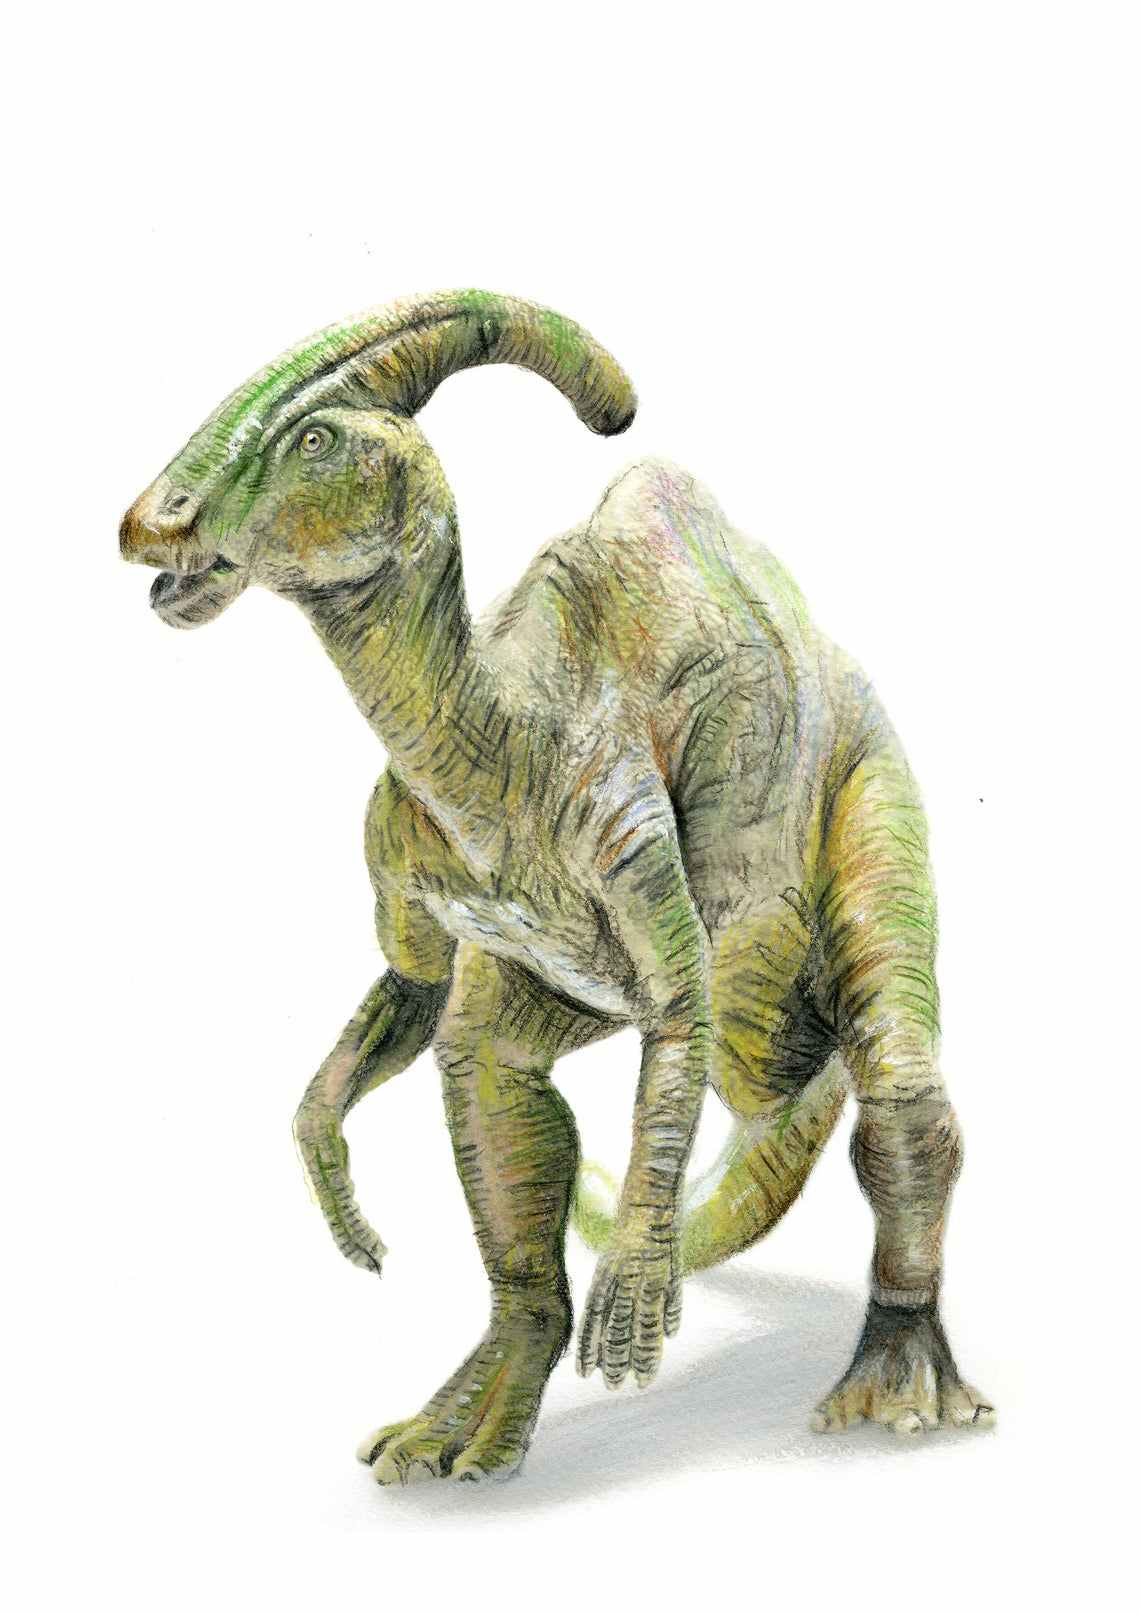 Parasaurolophus slika za dečiju sobu